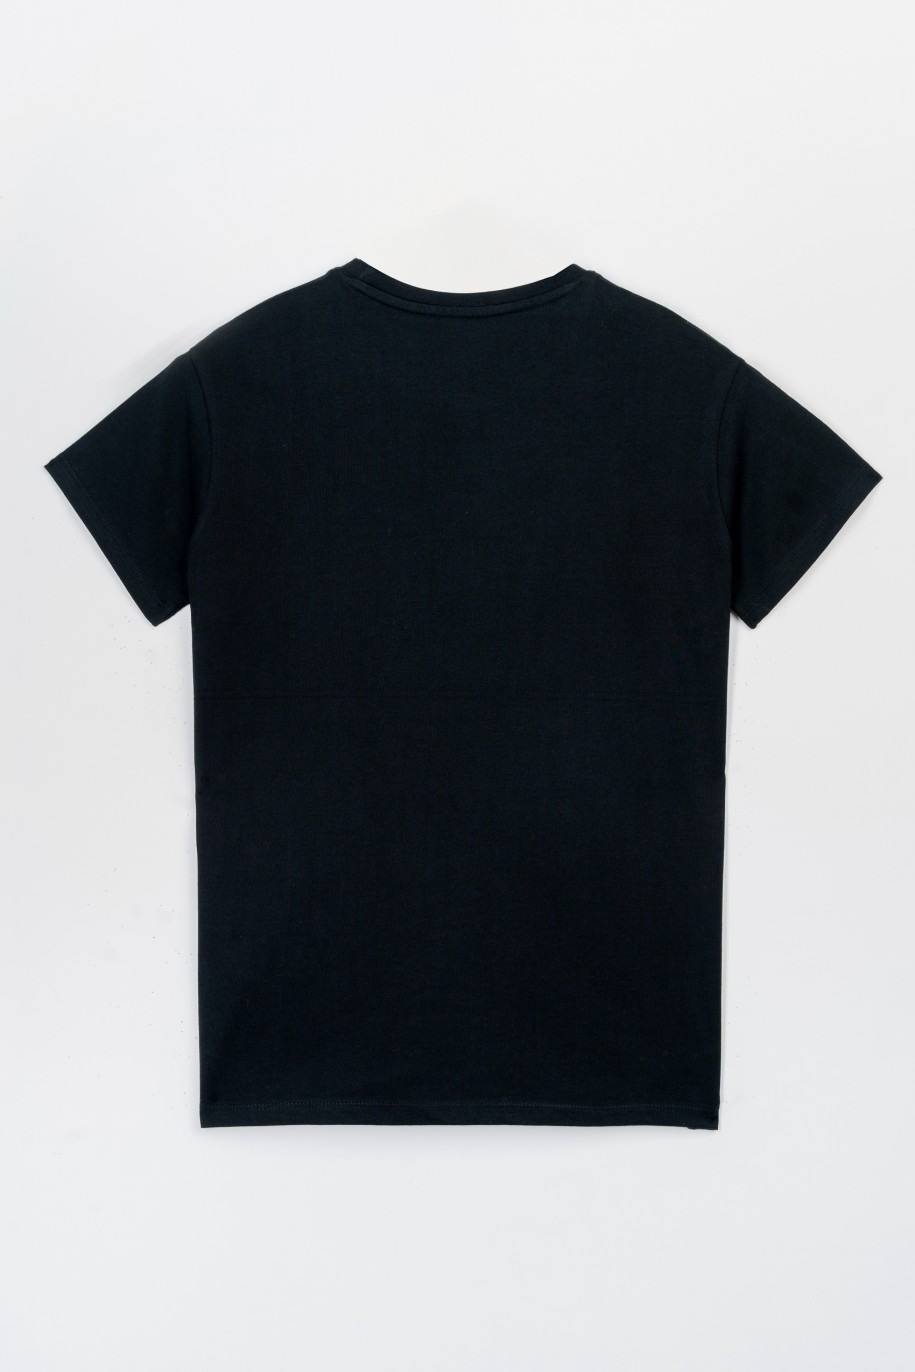 Czarny t-shirt z hologramowym nadrukiem na wysokości piersi - 47331